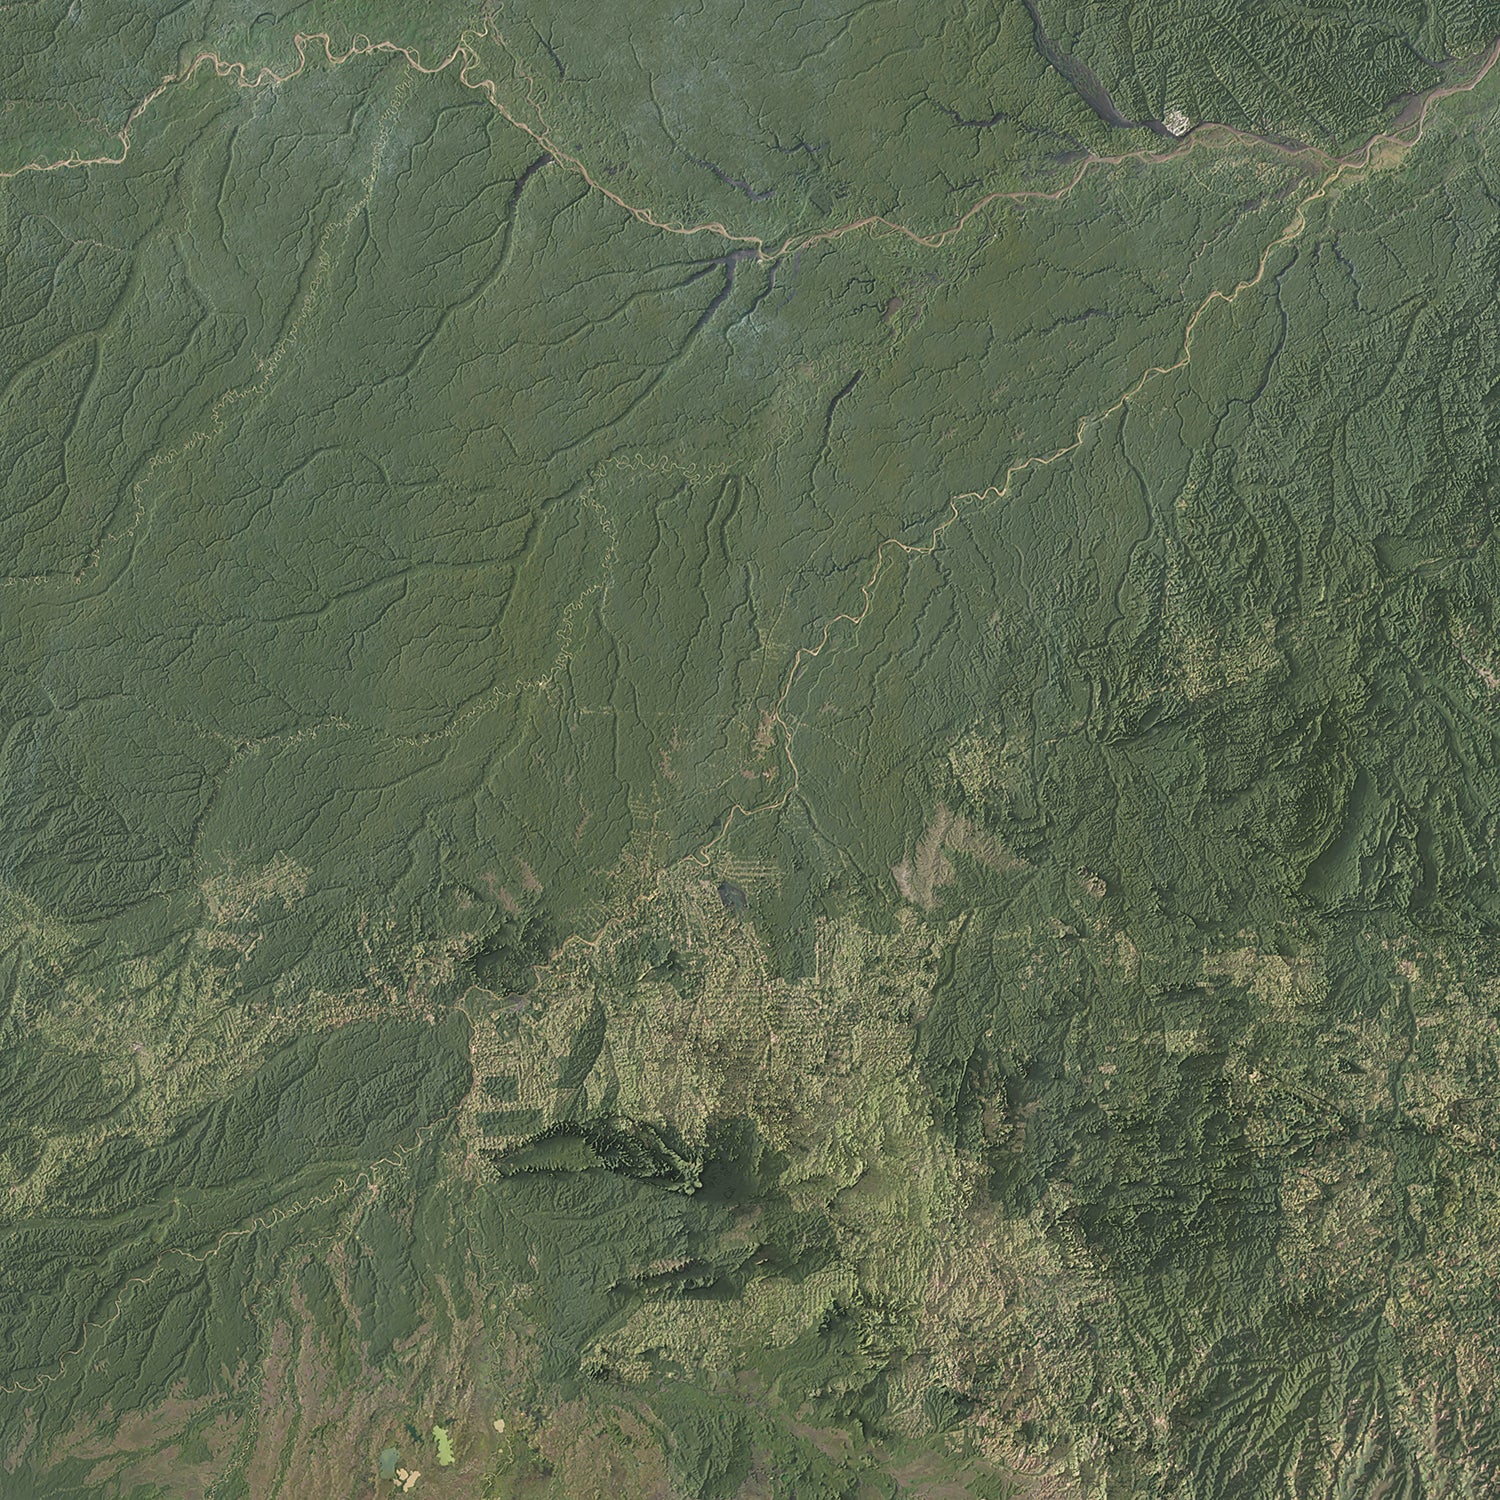 Amazon Basin - Satellite Imagery